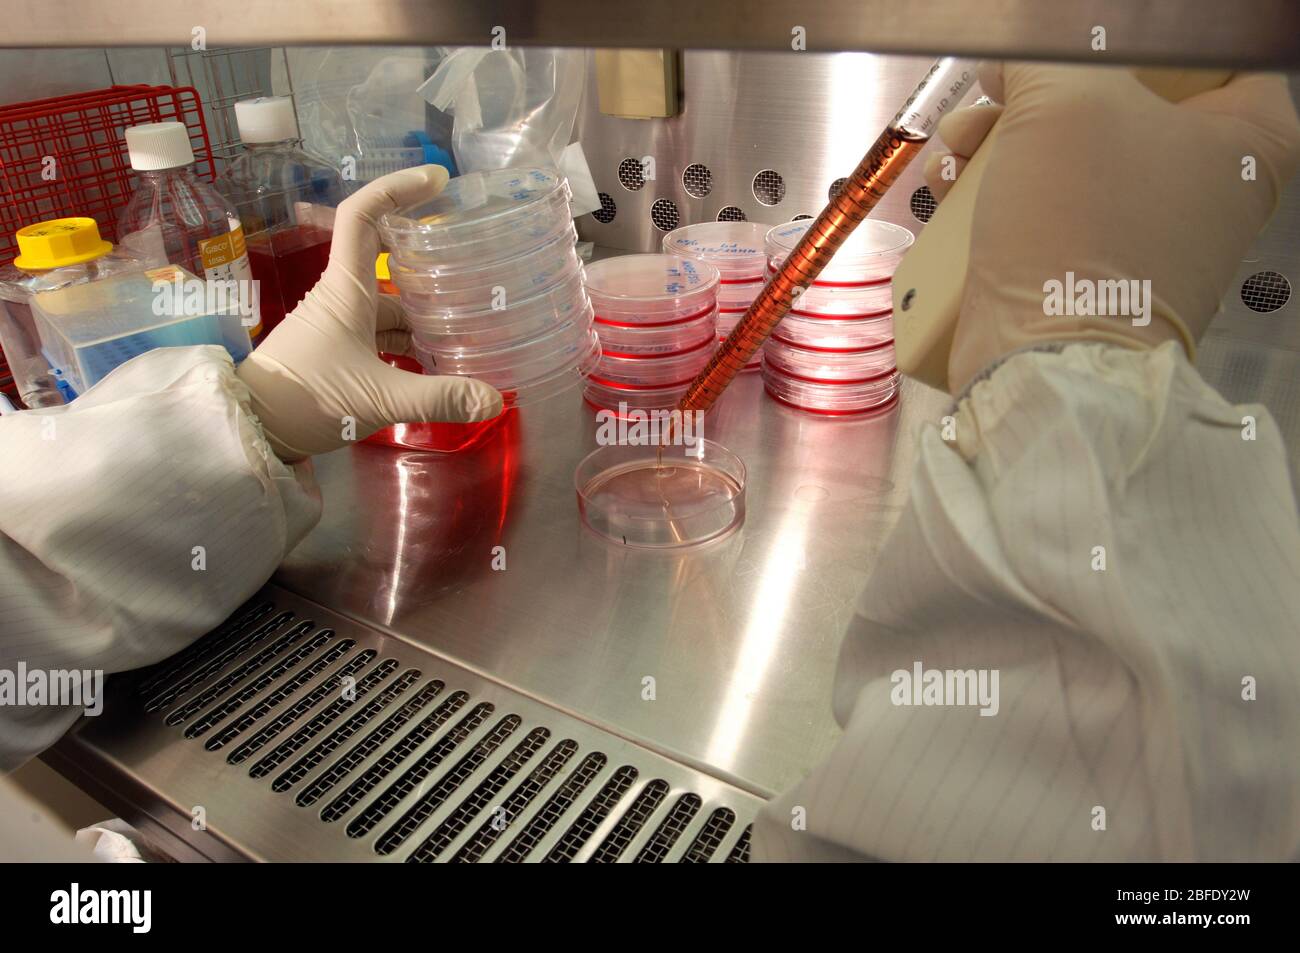 Tecnico di un laboratorio privo di germi che utilizza una pipetta elettronica per trasferire le cellule fibroblasti in piastre Petri prima di collocarli in un incub Foto Stock